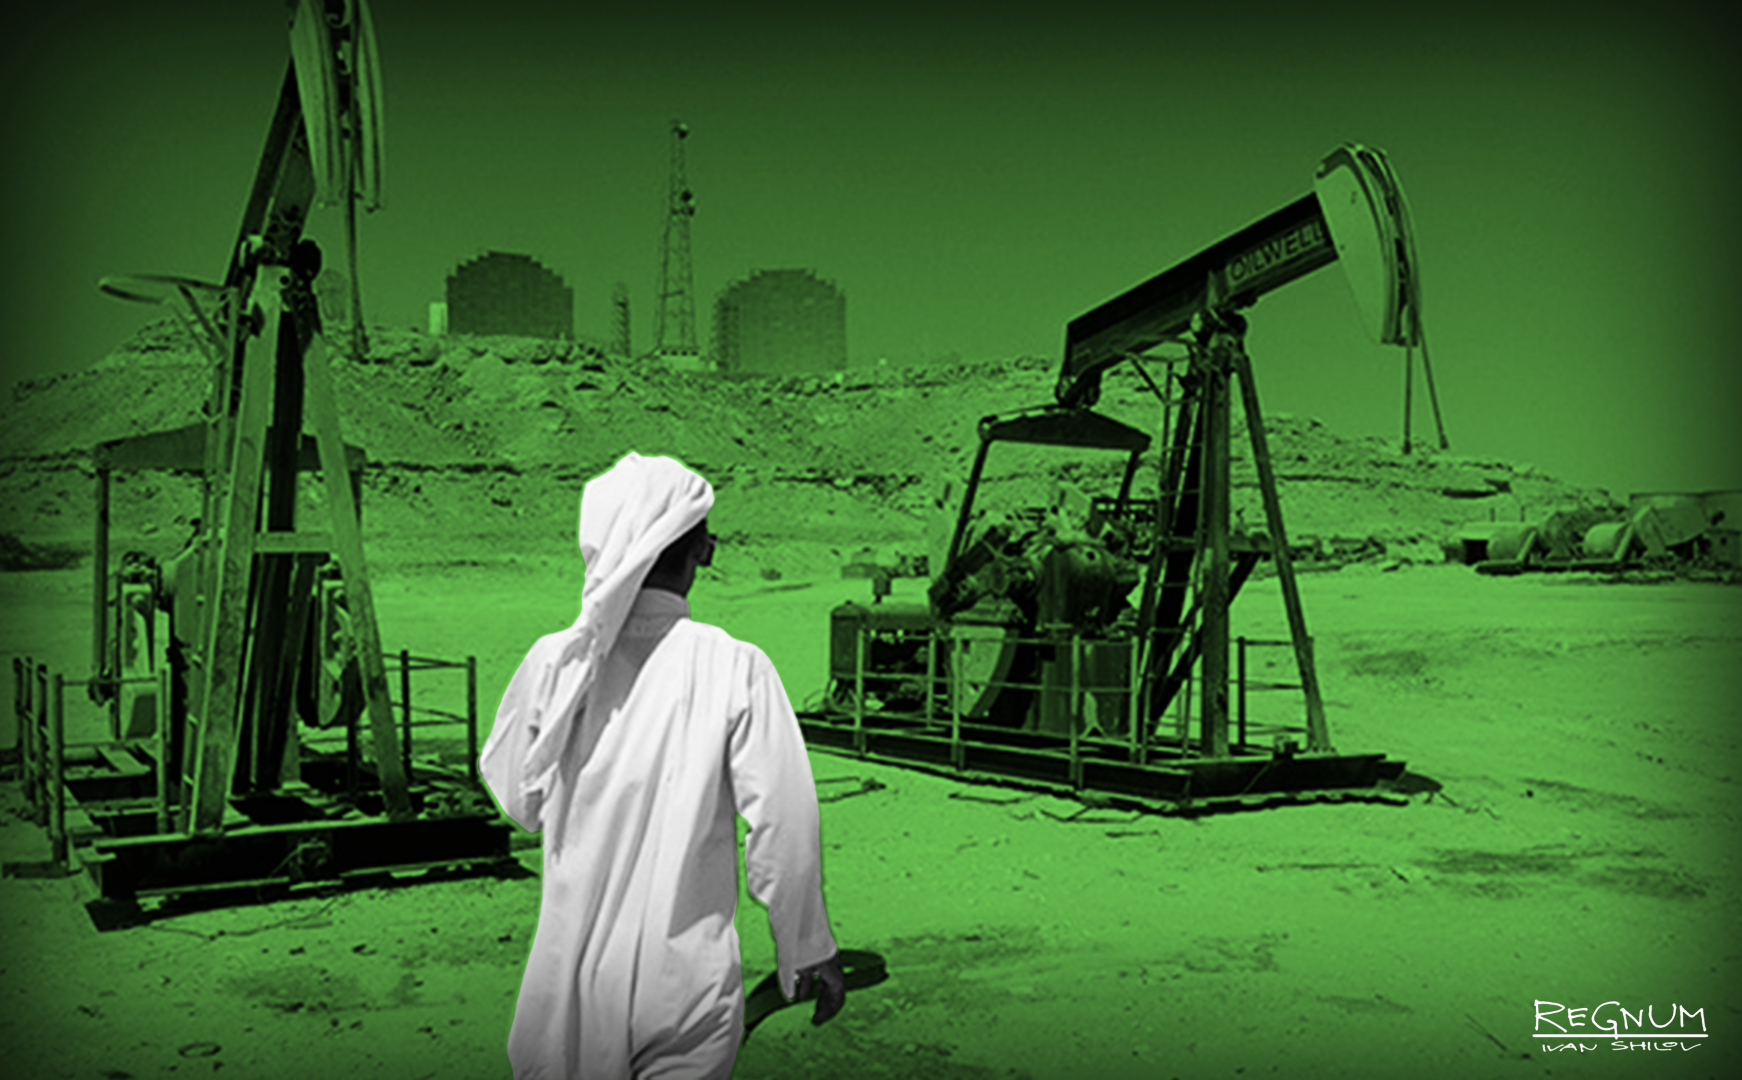 Нефть арабов. Саудовская Аравия нефтедобыча. Объединённые арабские эмираты добыча нефти. НПЗ Саудовской Аравии. Арабы и нефть.